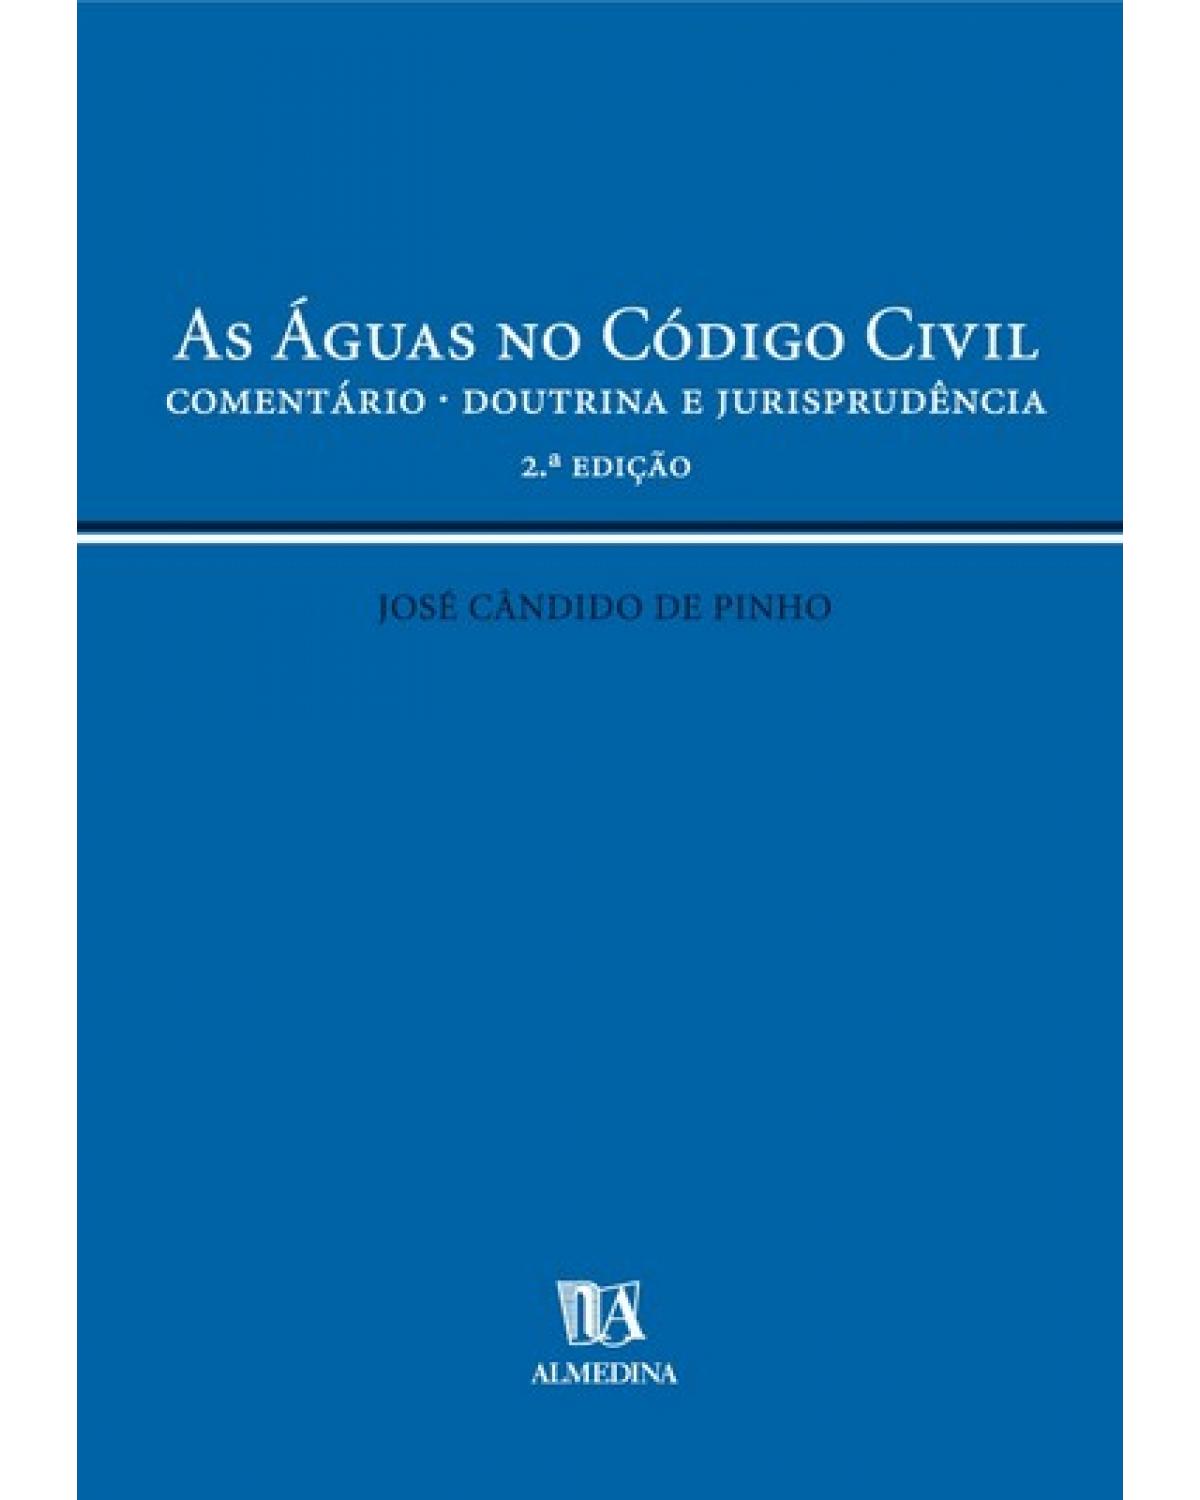 As águas no código civil - comentário - Doutrina e jurisprudência - 2ª Edição | 2005